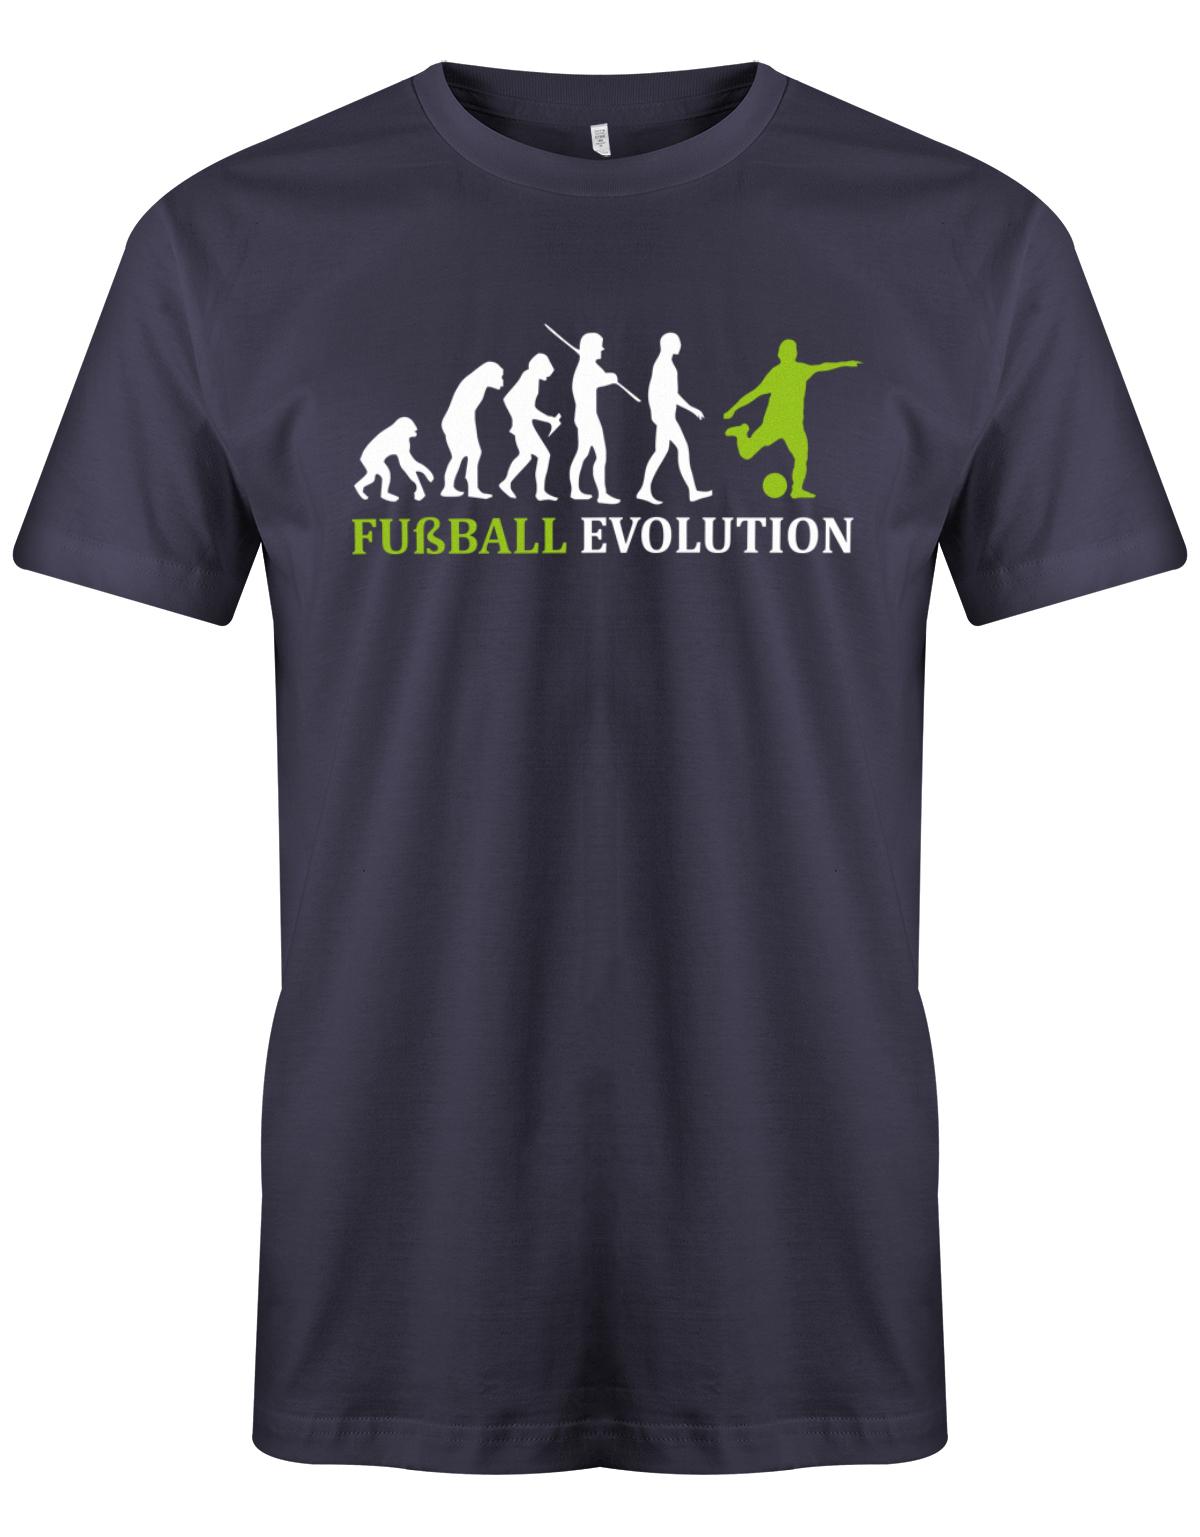 Fussball-Evolution-Herren-Shirt-Nav-Gr-n